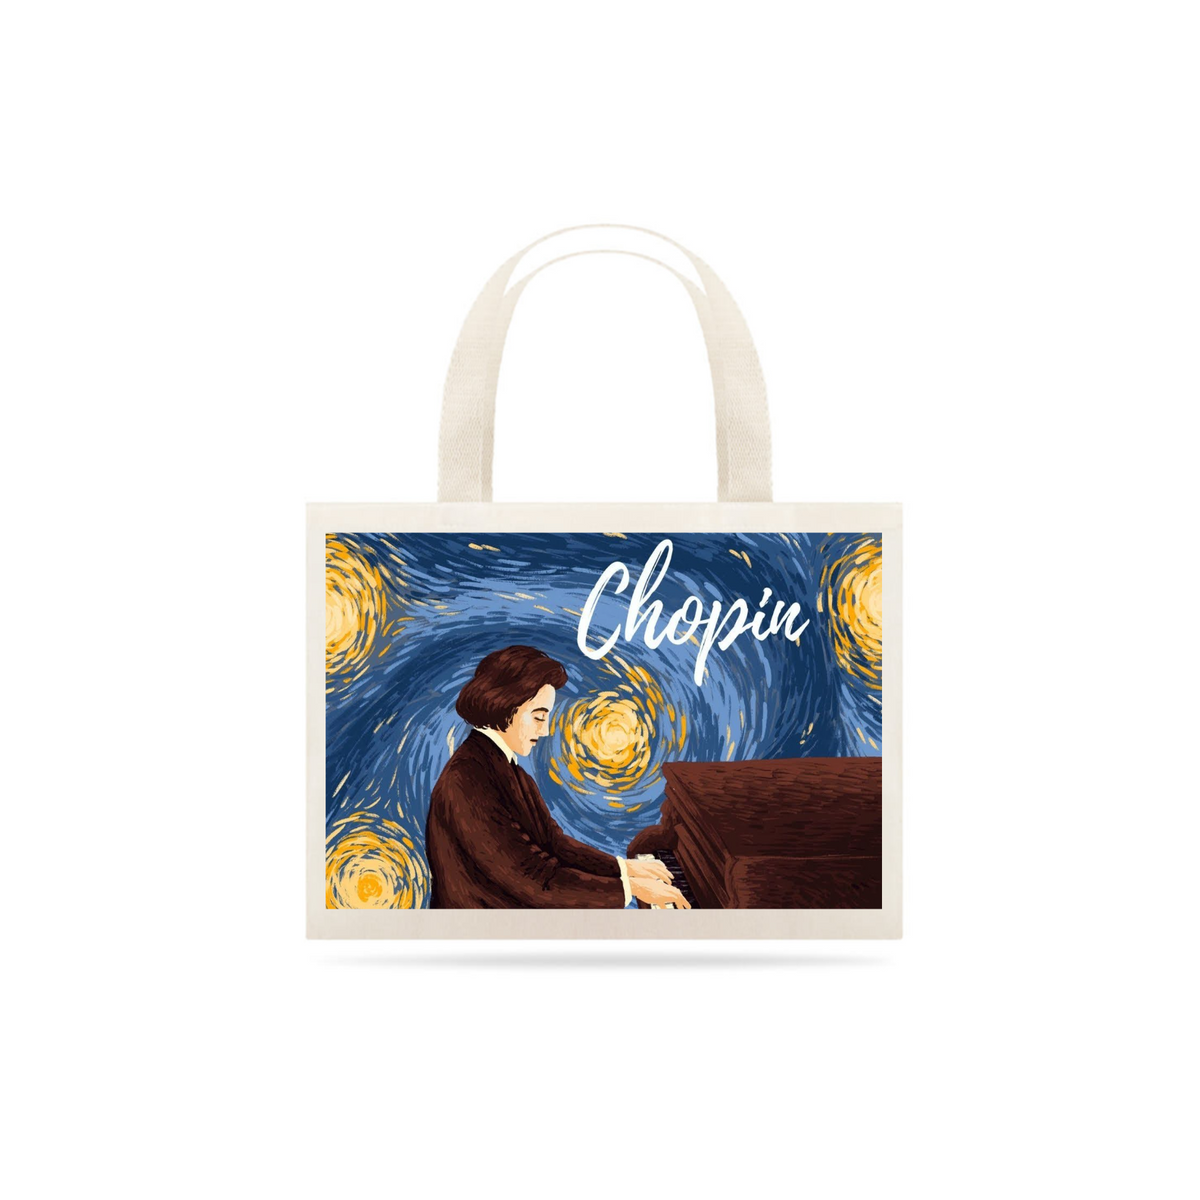 Nome do produto: Chopin